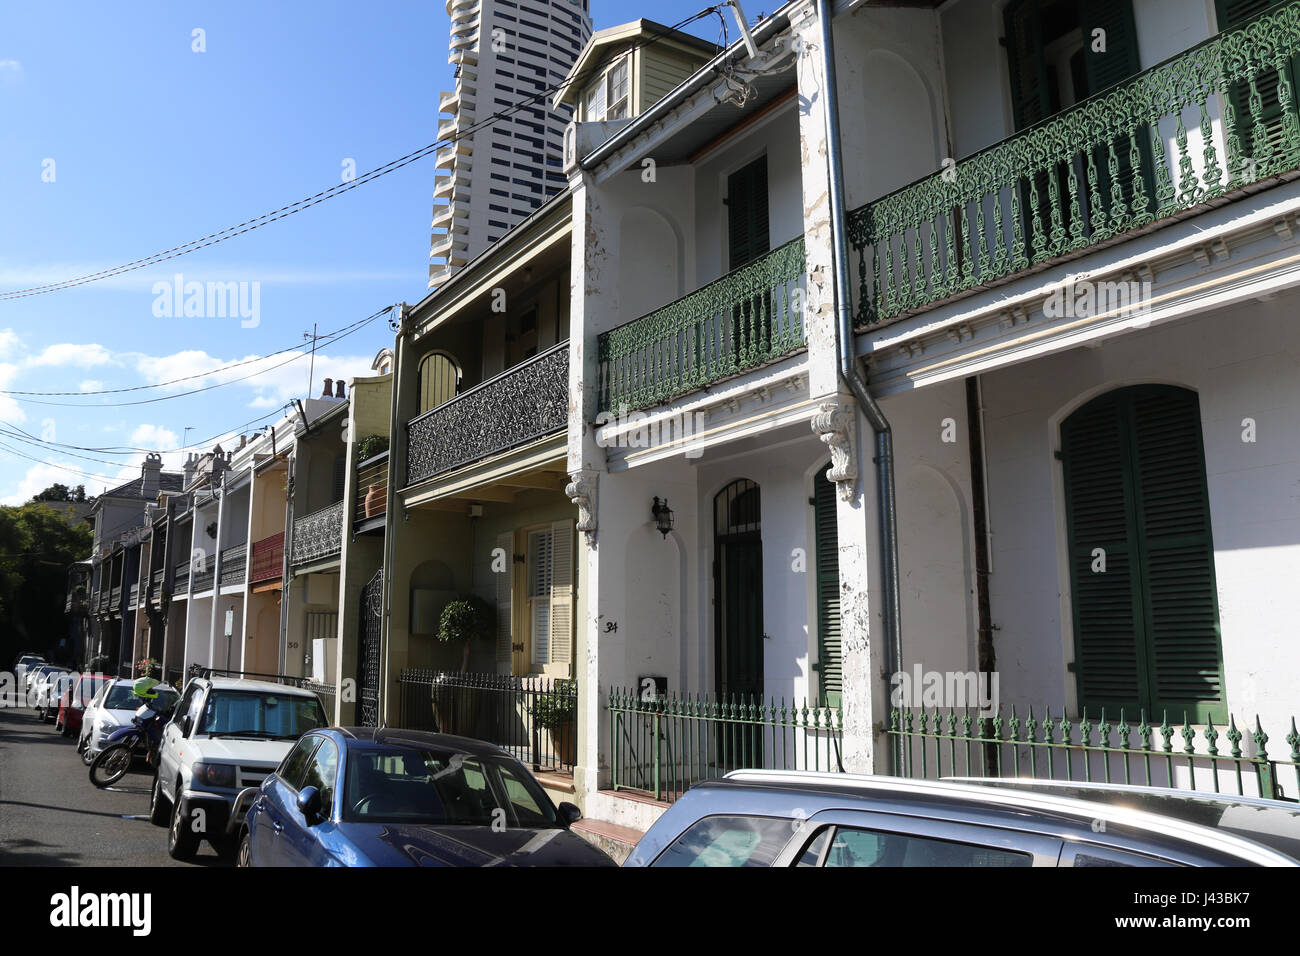 Terraced houses on Thomson Street, Darlinghurst in Sydney, Australia. Stock Photo